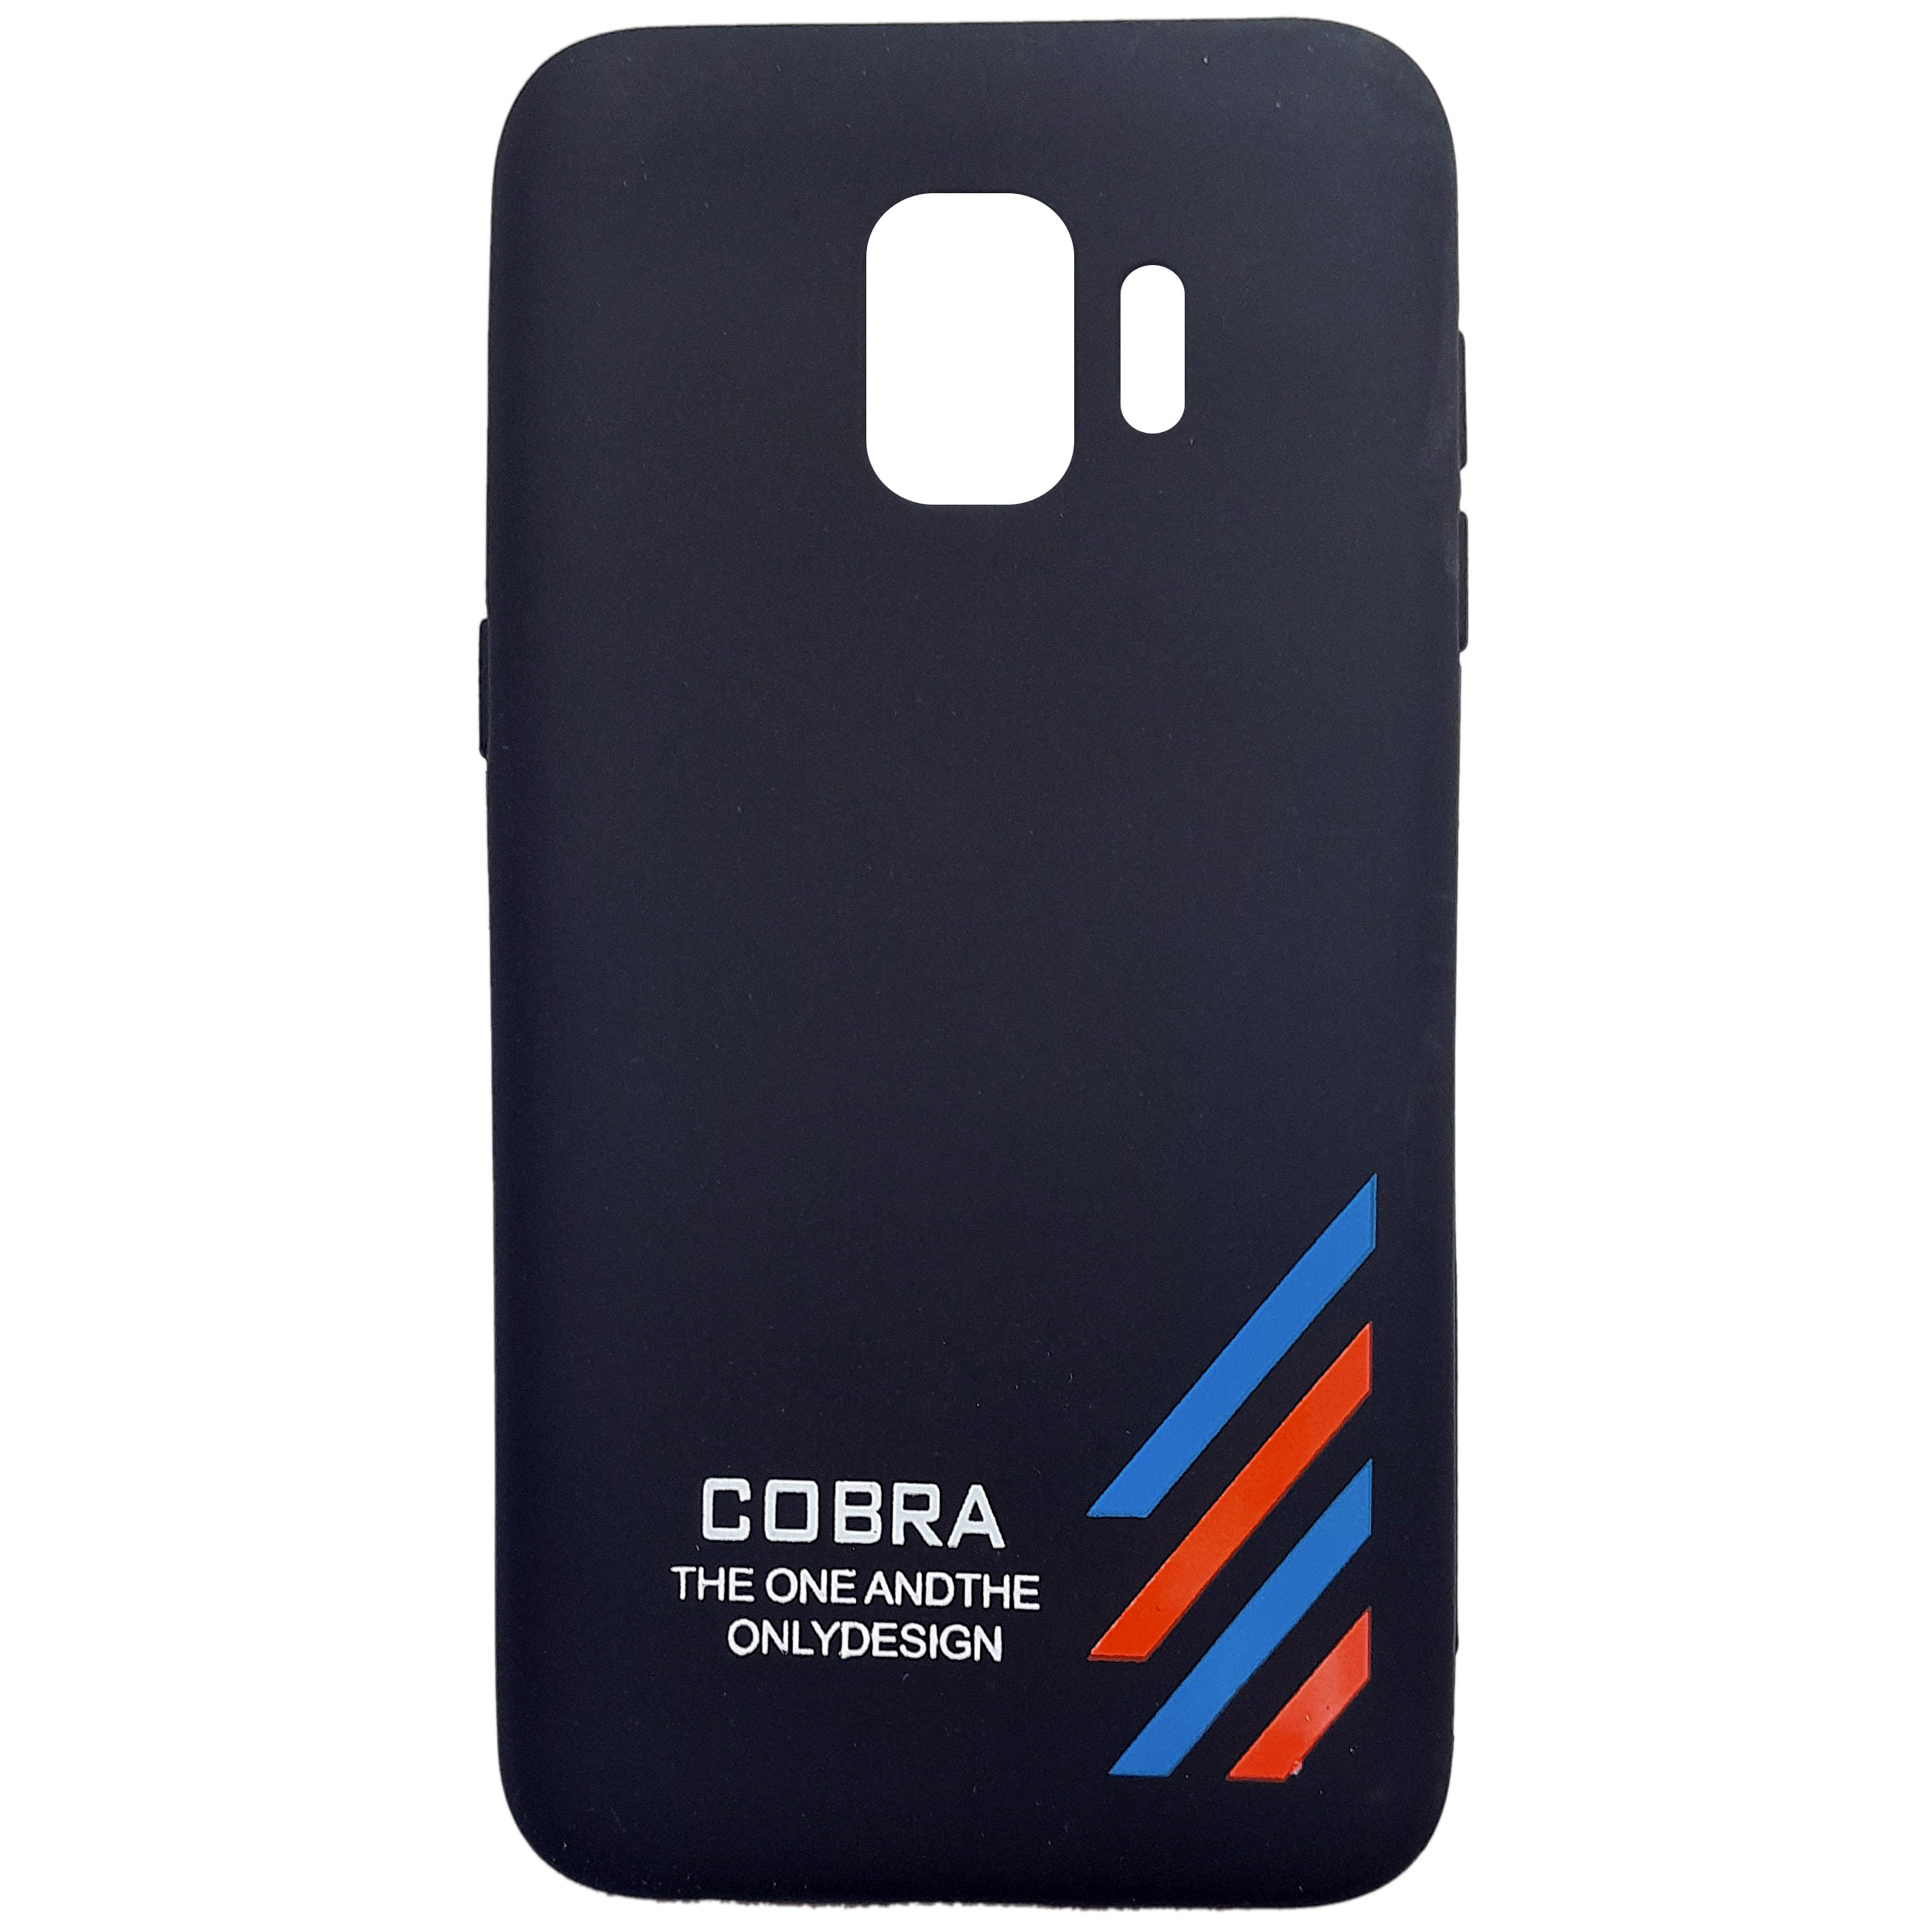 کاور کبرا مدل A3 مناسب برای گوشی موبایل سامسونگ Galaxy J2 core 2018